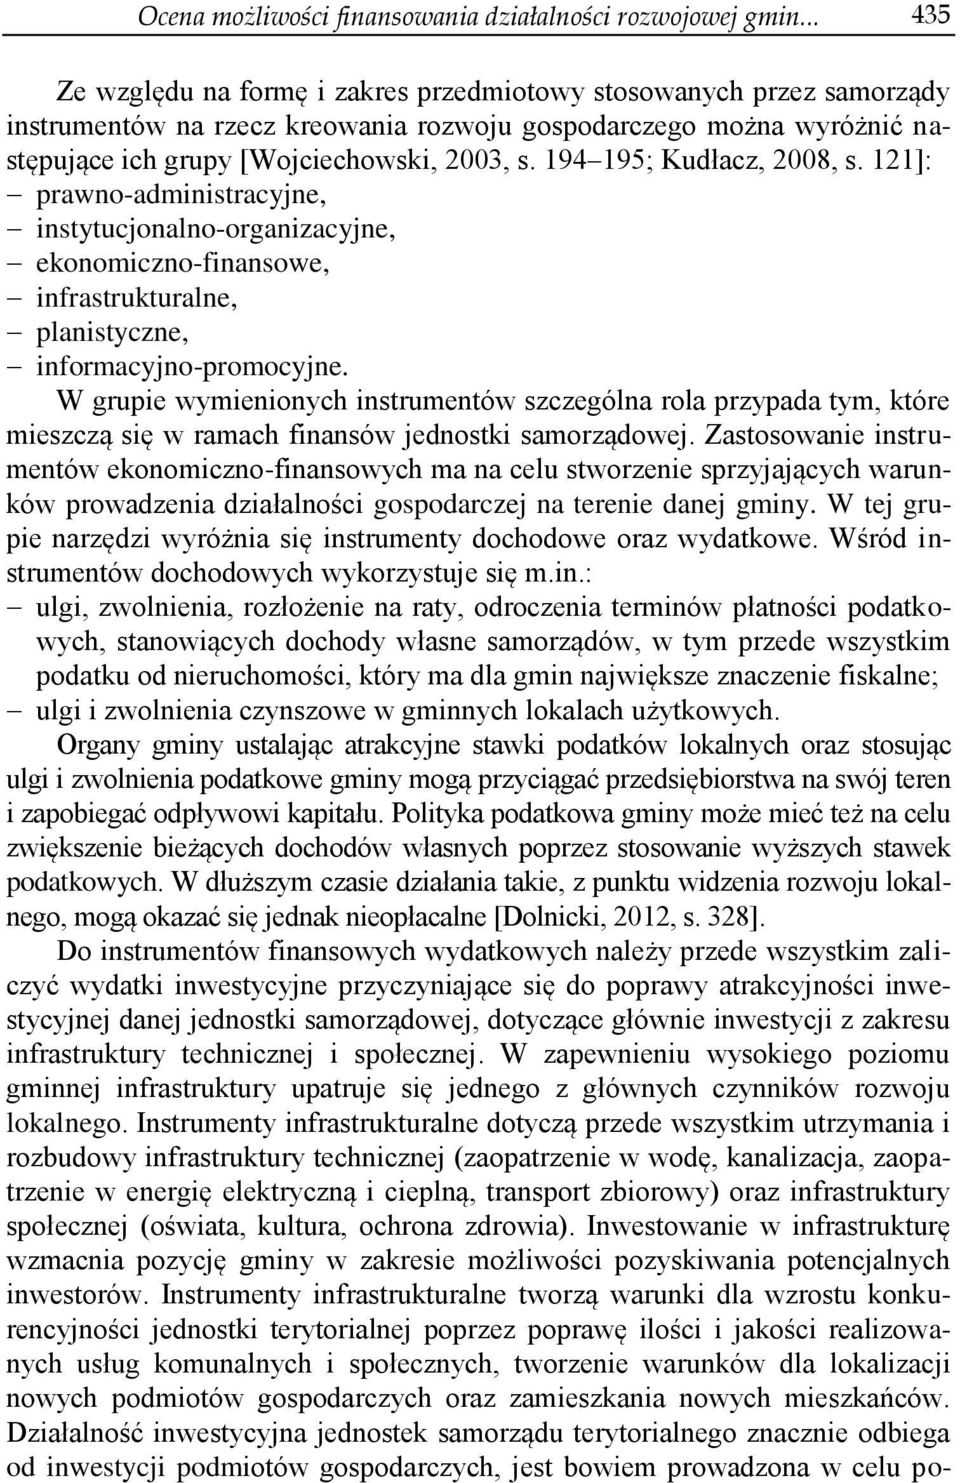 194 195; Kudłacz, 2008, s. 121]: prawno-administracyjne, instytucjonalno-organizacyjne, ekonomiczno-finansowe, infrastrukturalne, planistyczne, informacyjno-promocyjne.